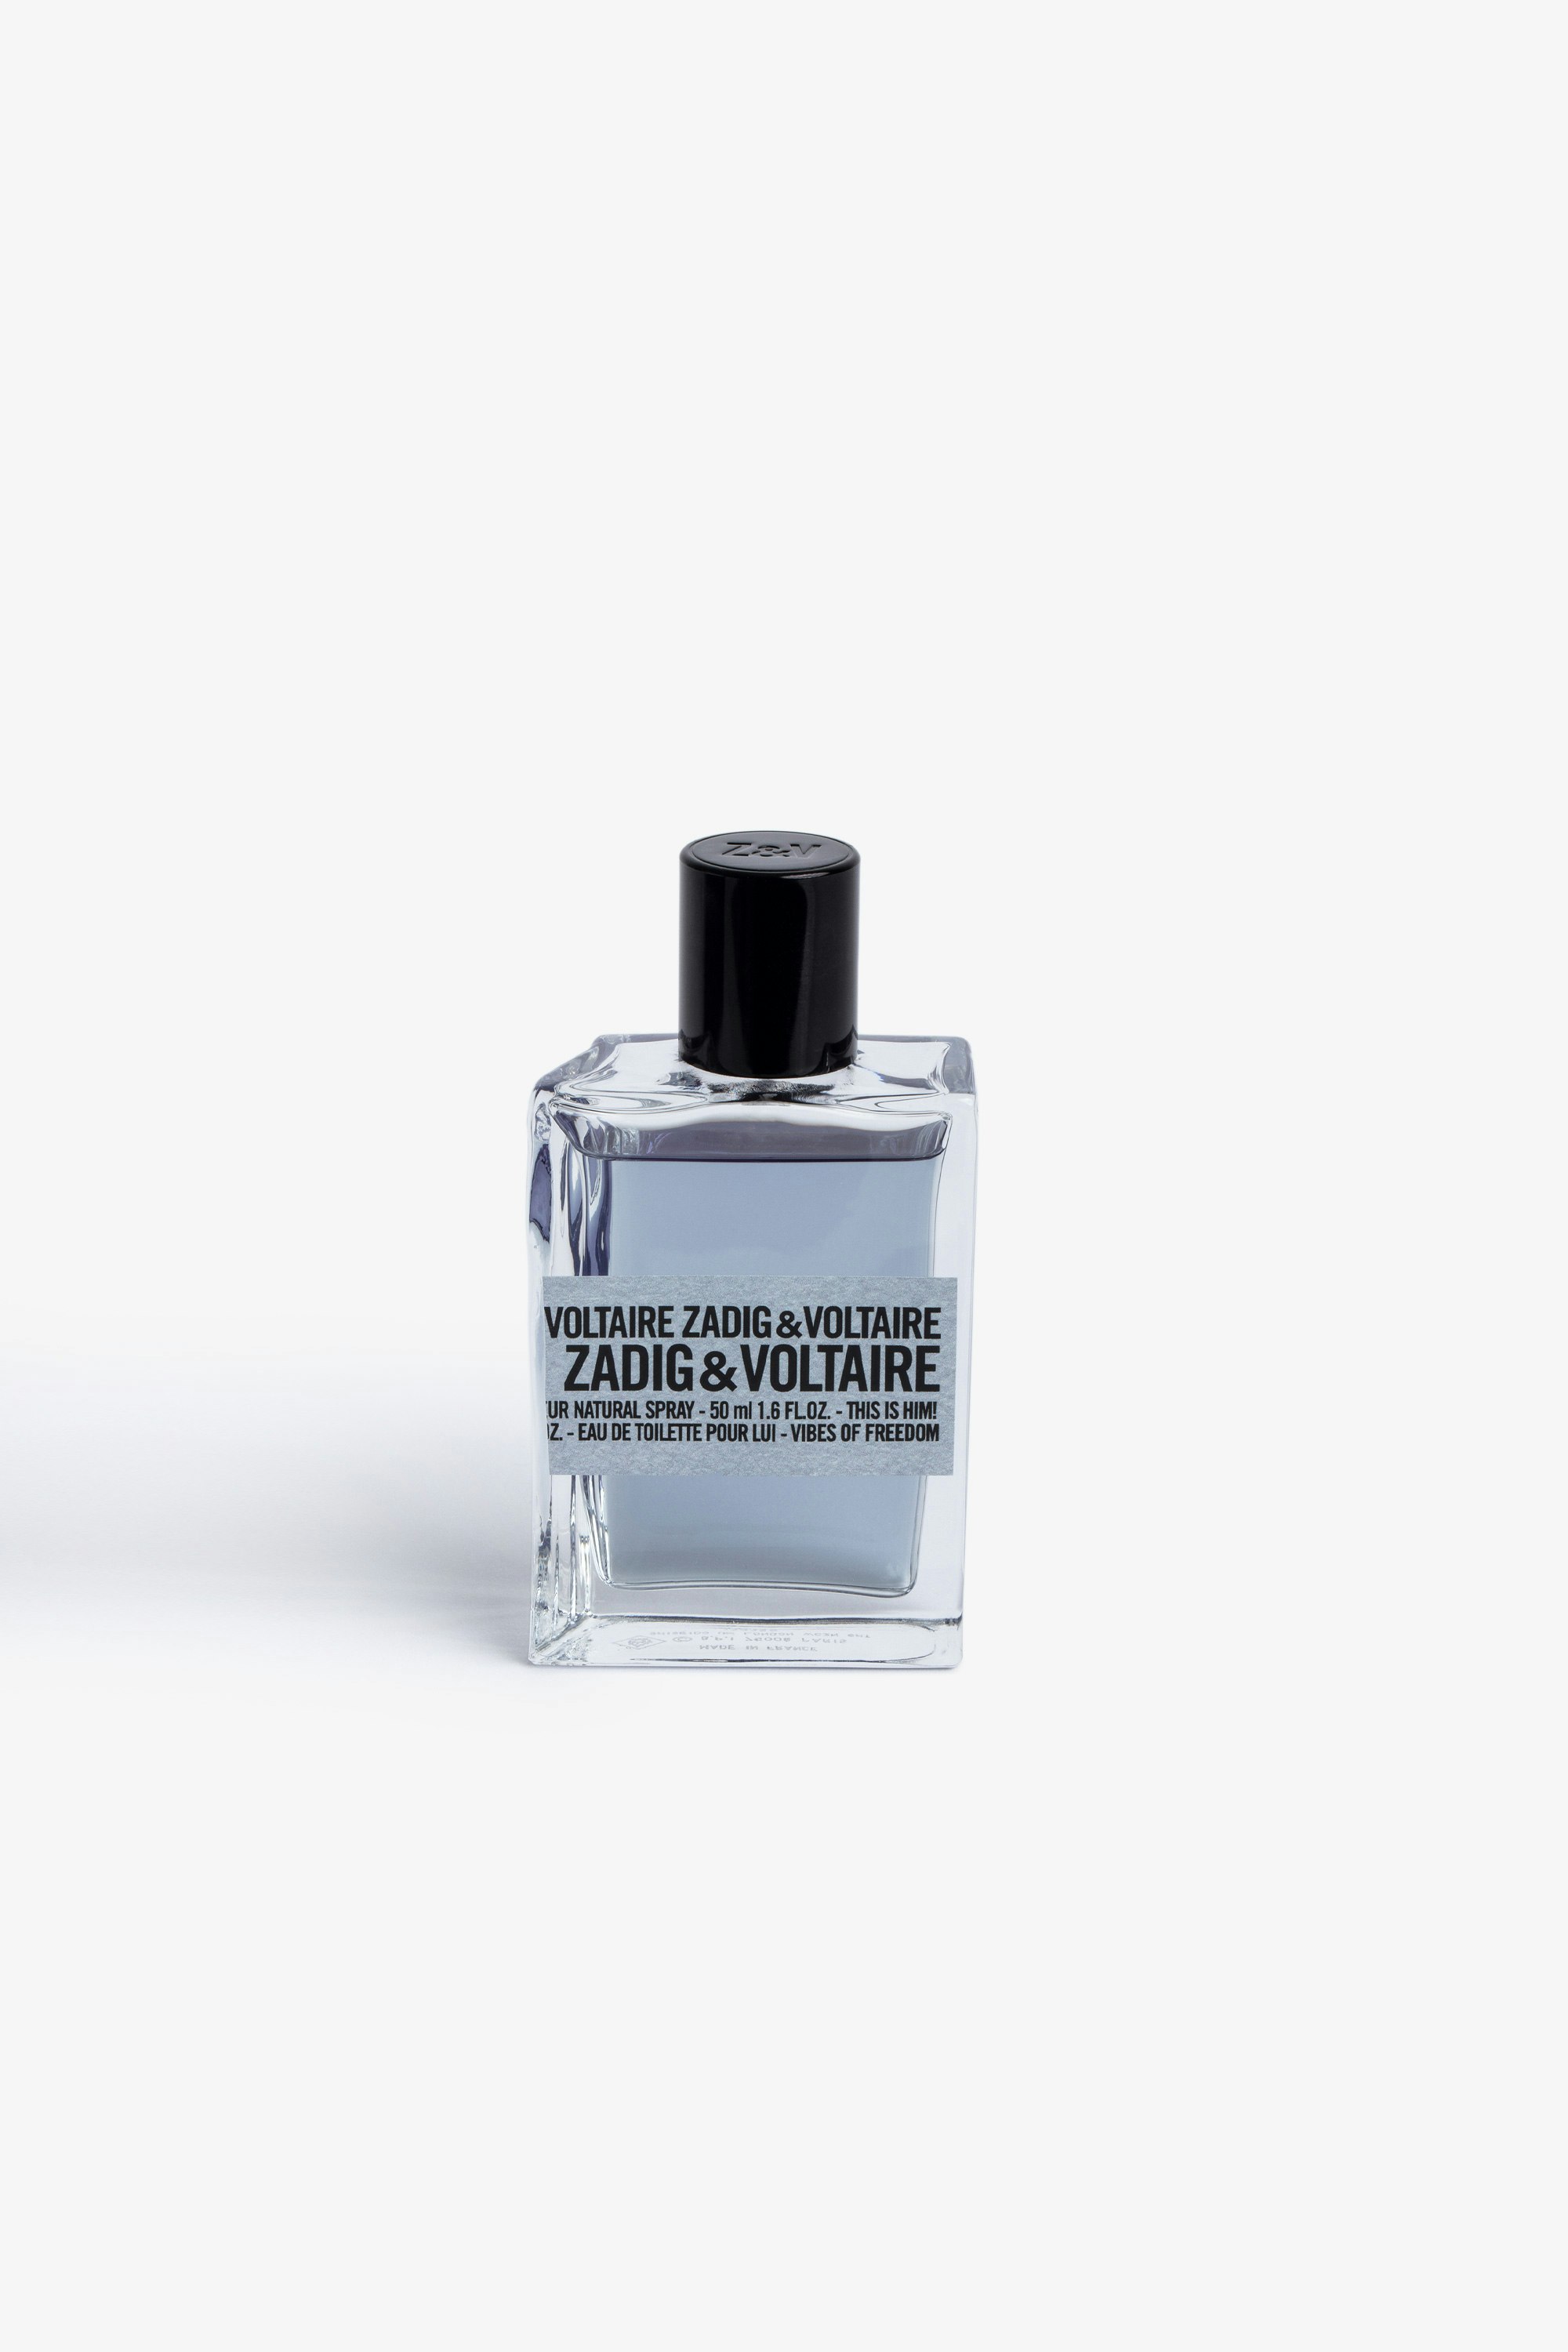 Parfum This is Him! Vibes Of Freedom 50ML - Une fragrance énergique et boisée. 
Un trait aromatique et acidulé délivré par la lavande énergique et la mandarine effervescente.